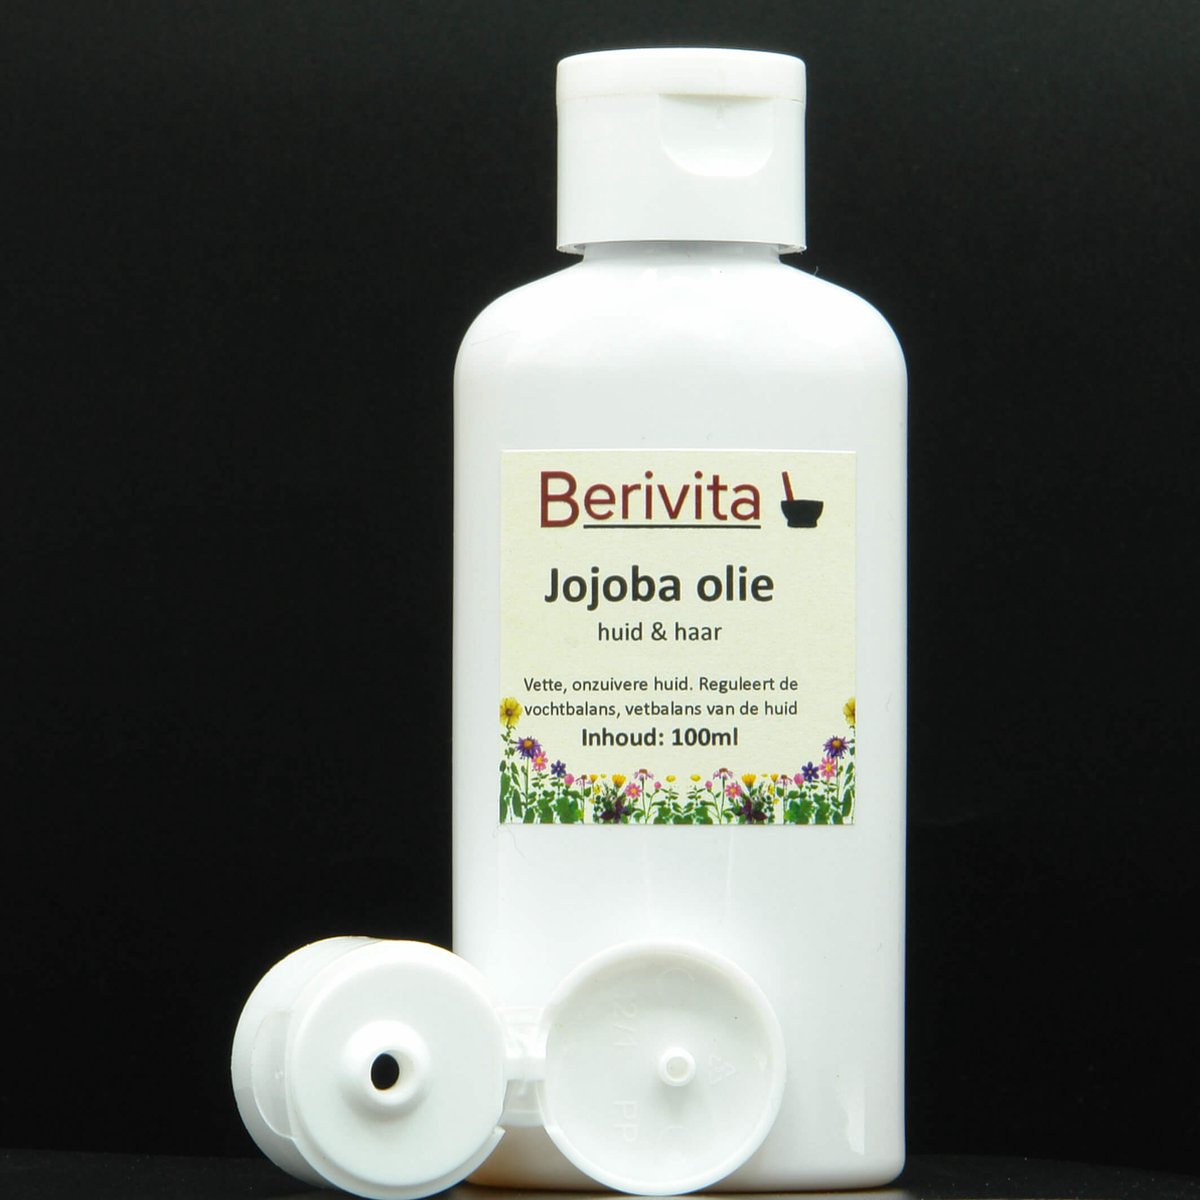 Jojoba Olie Puur 100ml - Koudgeperste en Onbewerkte Jojoba Oil - Huidolie en Haarolie - Berivita